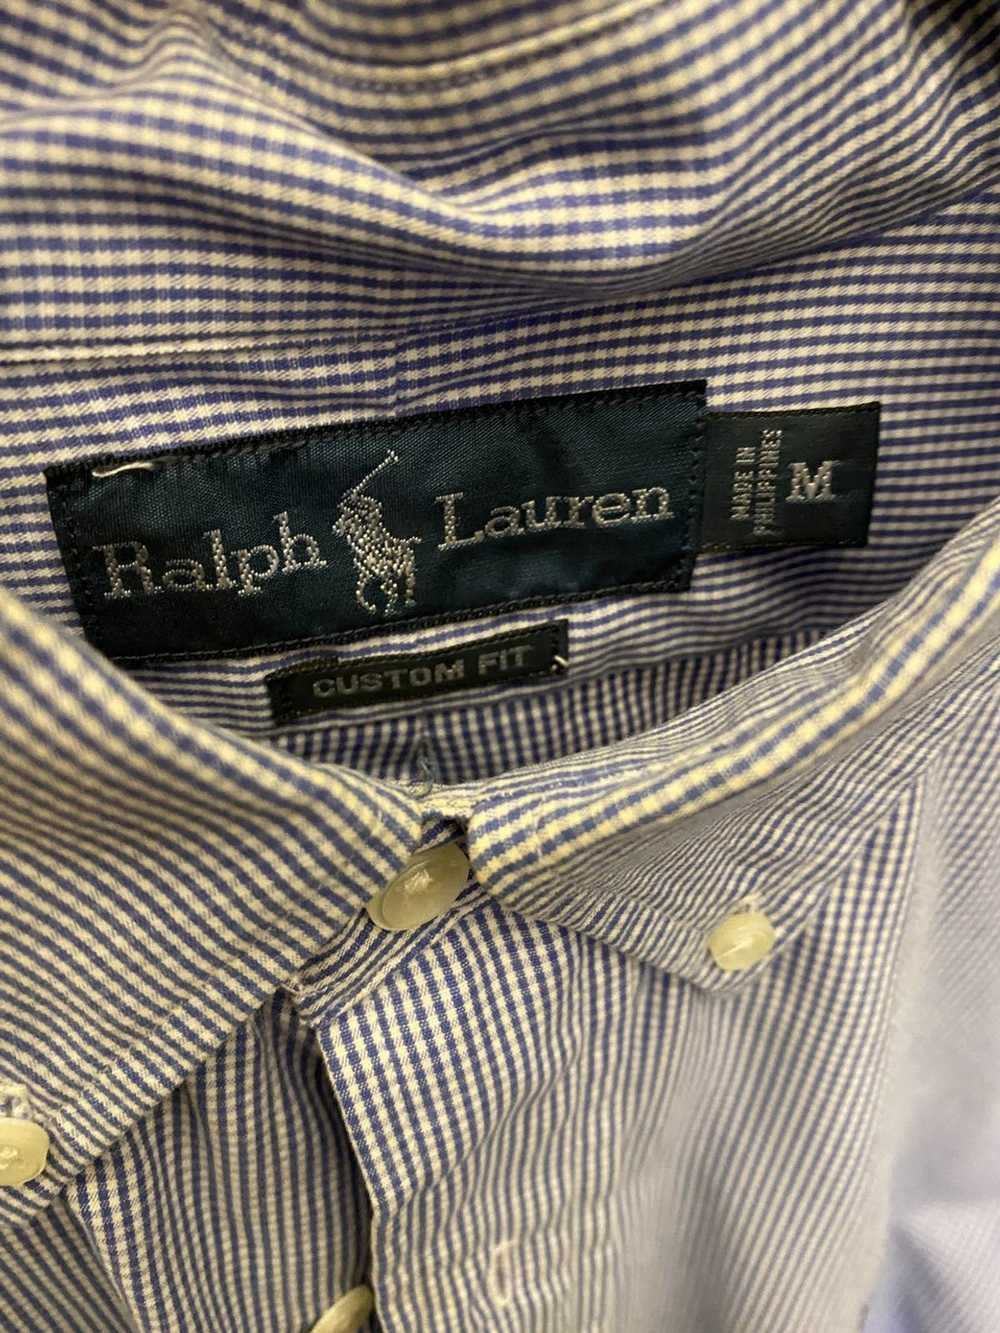 Polo Ralph Lauren Ralph Lauren dress shirt Sz m - image 3